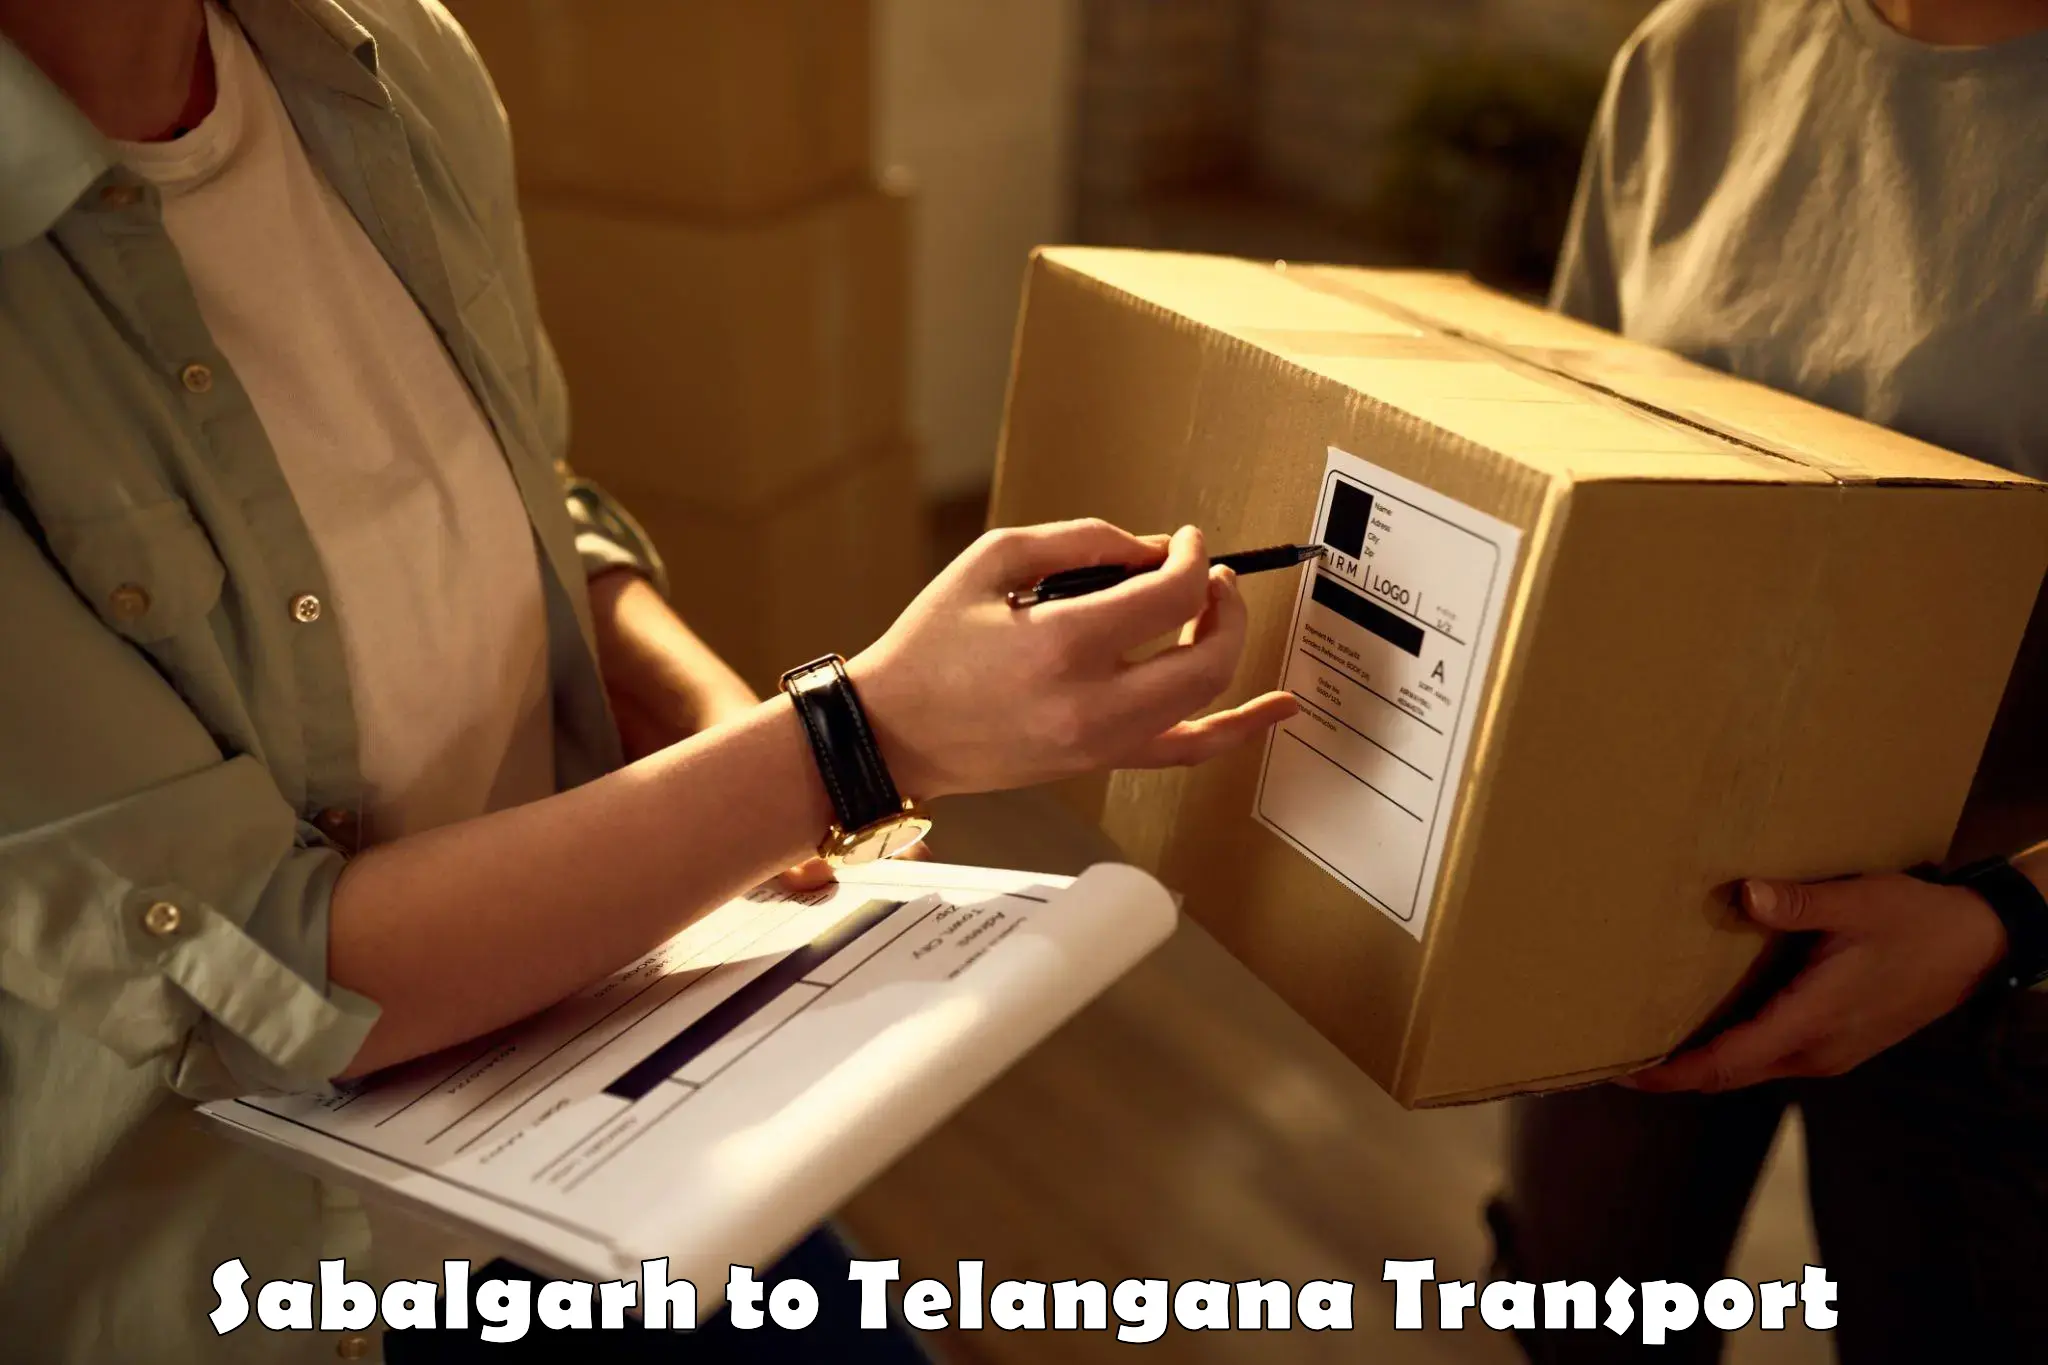 Online transport service Sabalgarh to Vikarabad